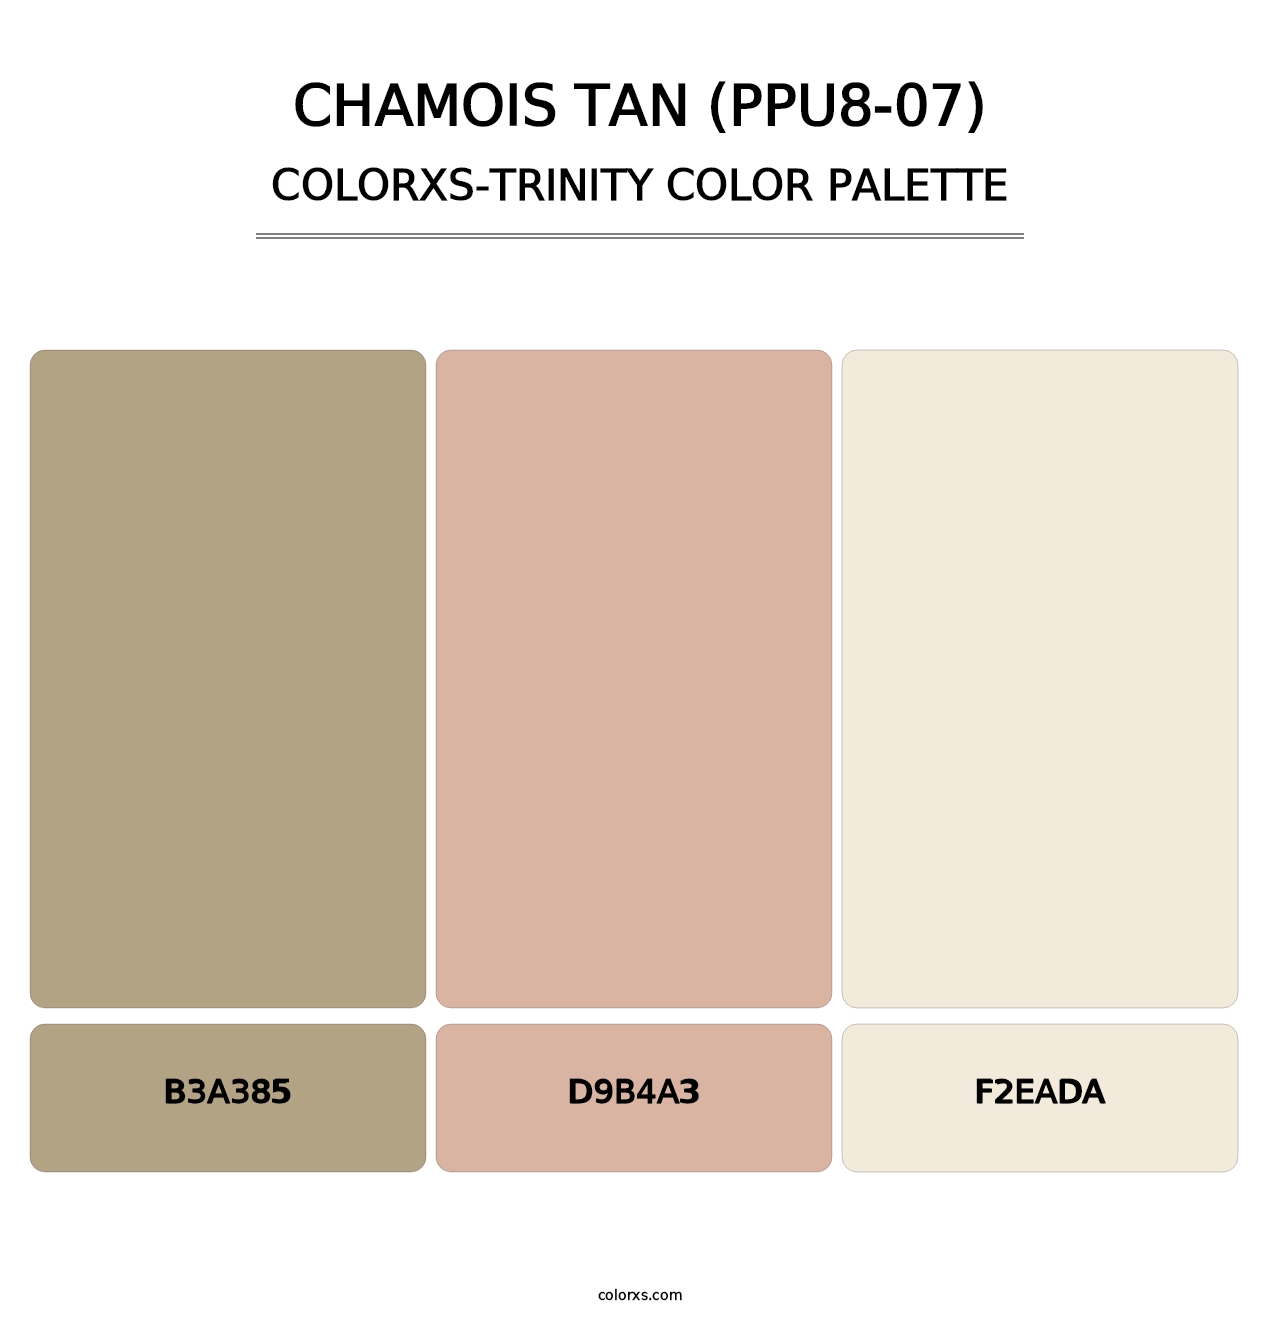 Chamois Tan (PPU8-07) - Colorxs Trinity Palette